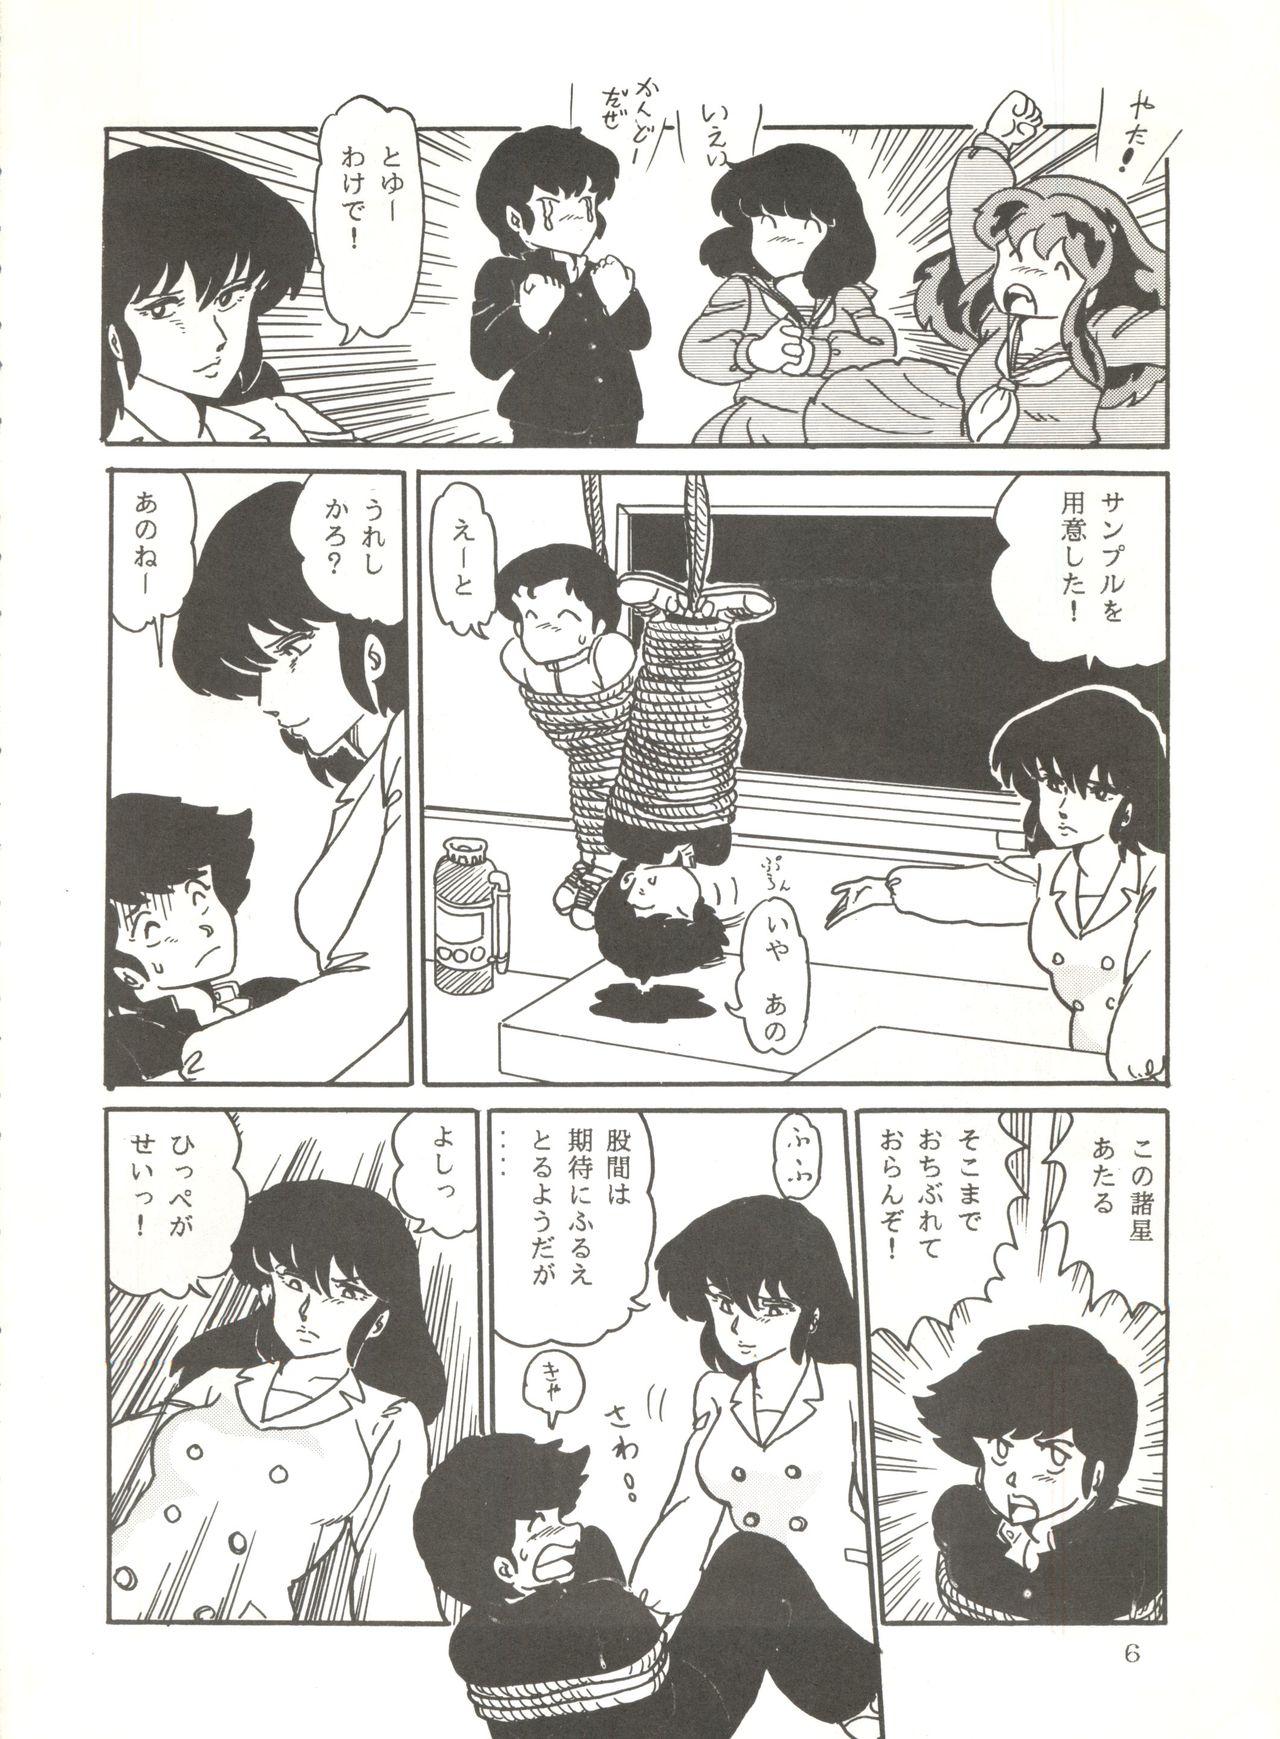 Riding Shijou Saiaku no Lum 4 - Urusei yatsura Punishment - Page 5